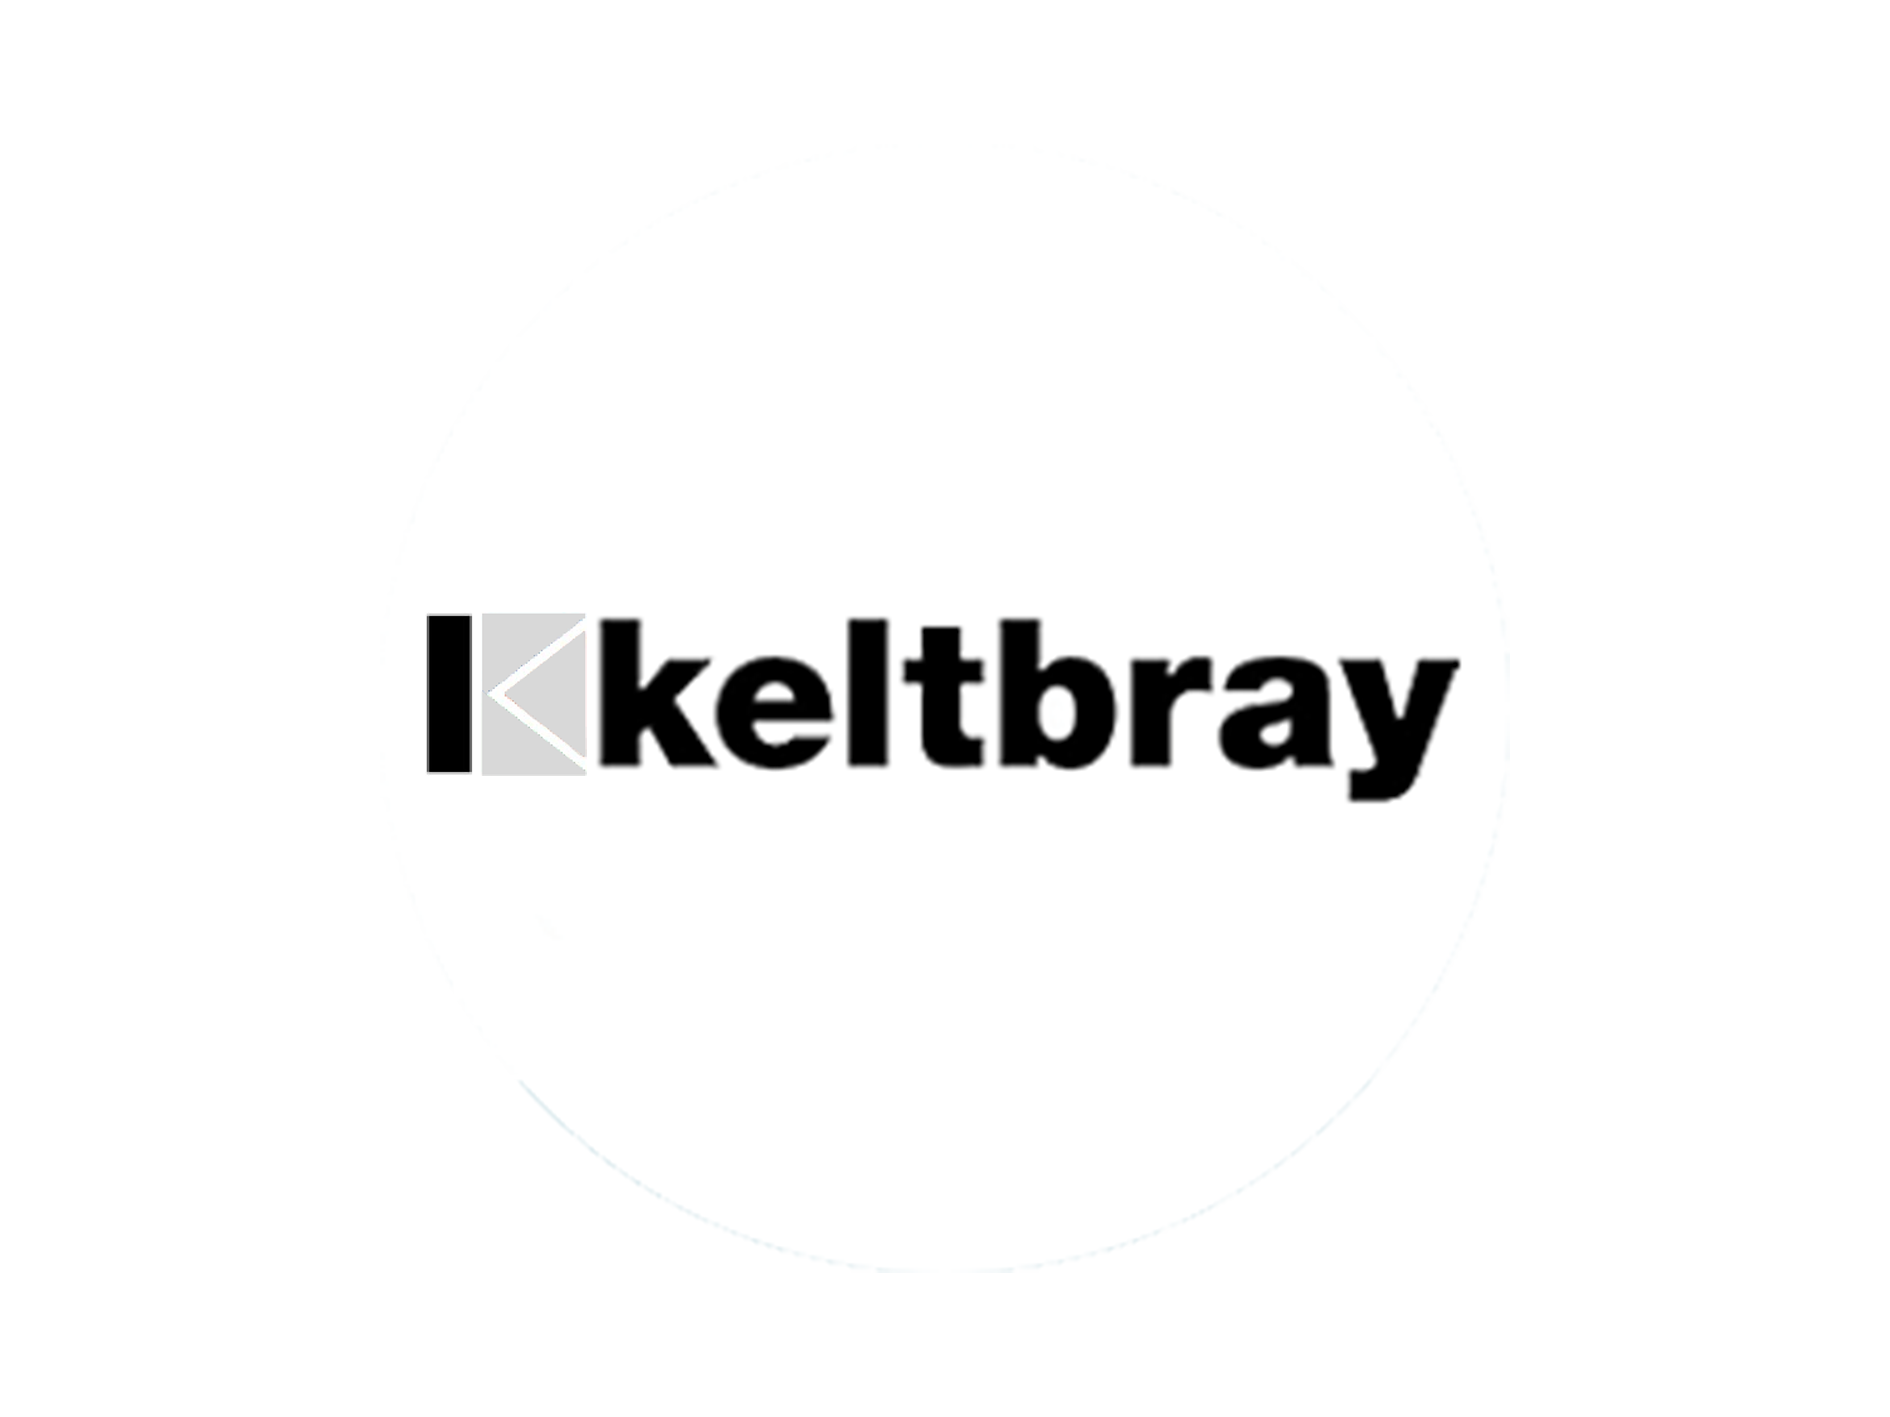 Keltbray